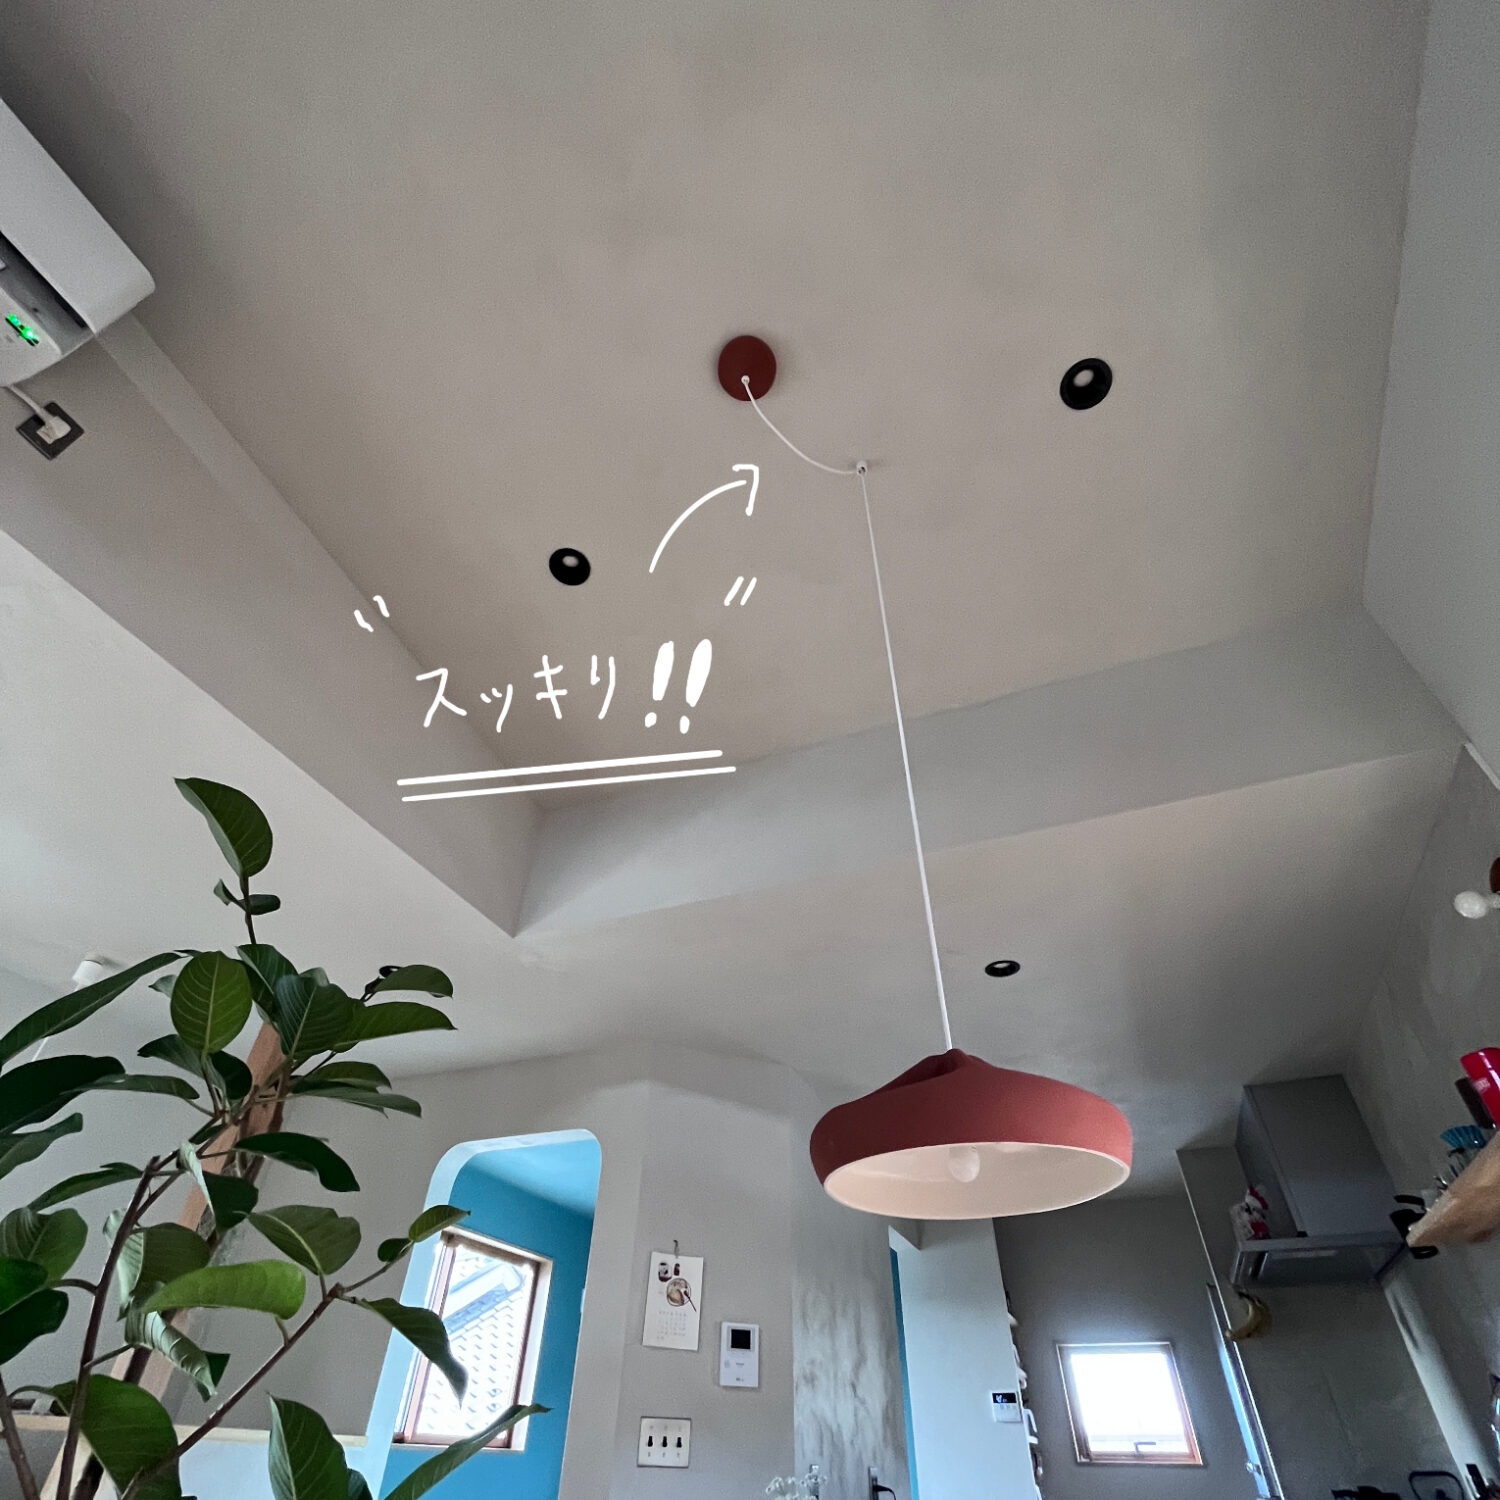 勾配天井にコードハンガーを使ってペンダントライトを取付ける方法